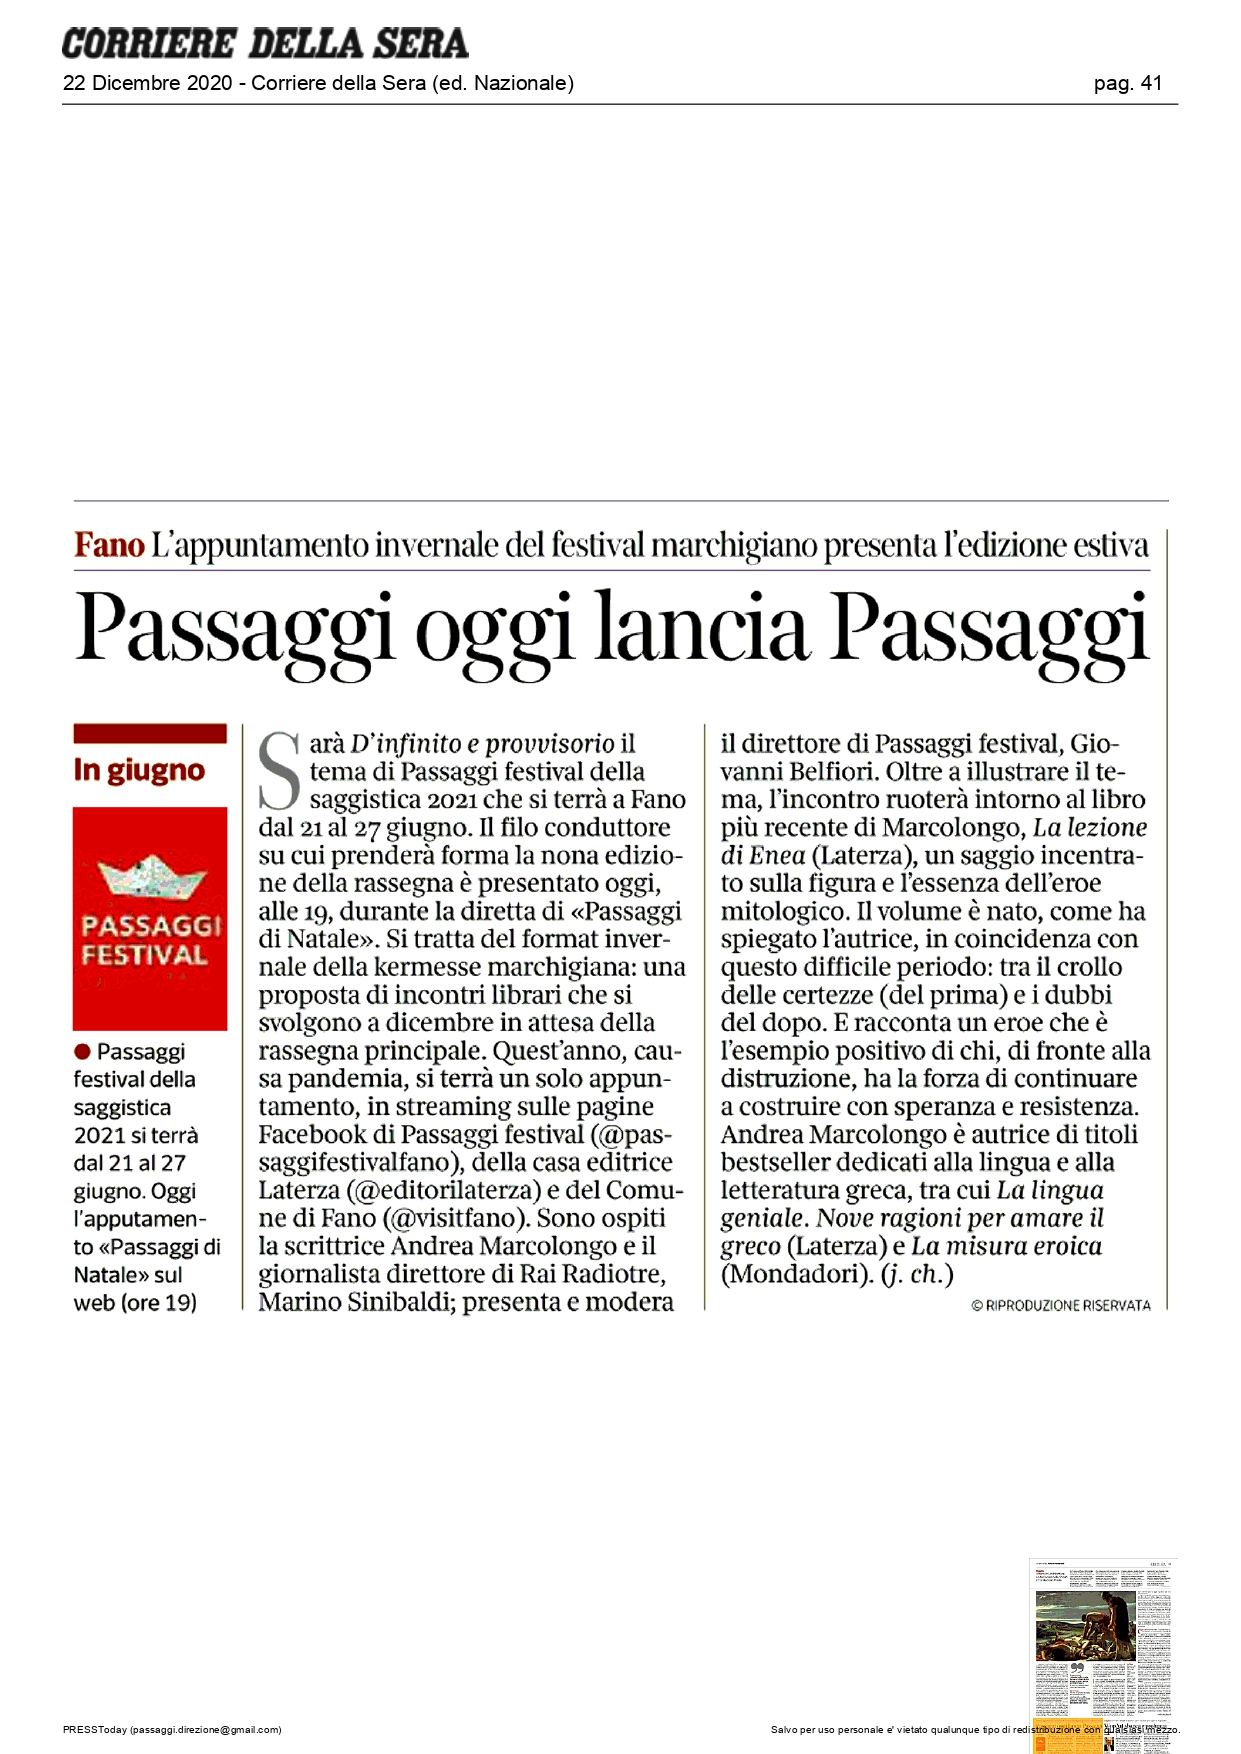 Corriere della Sera – Passaggi oggi lancia Passaggi